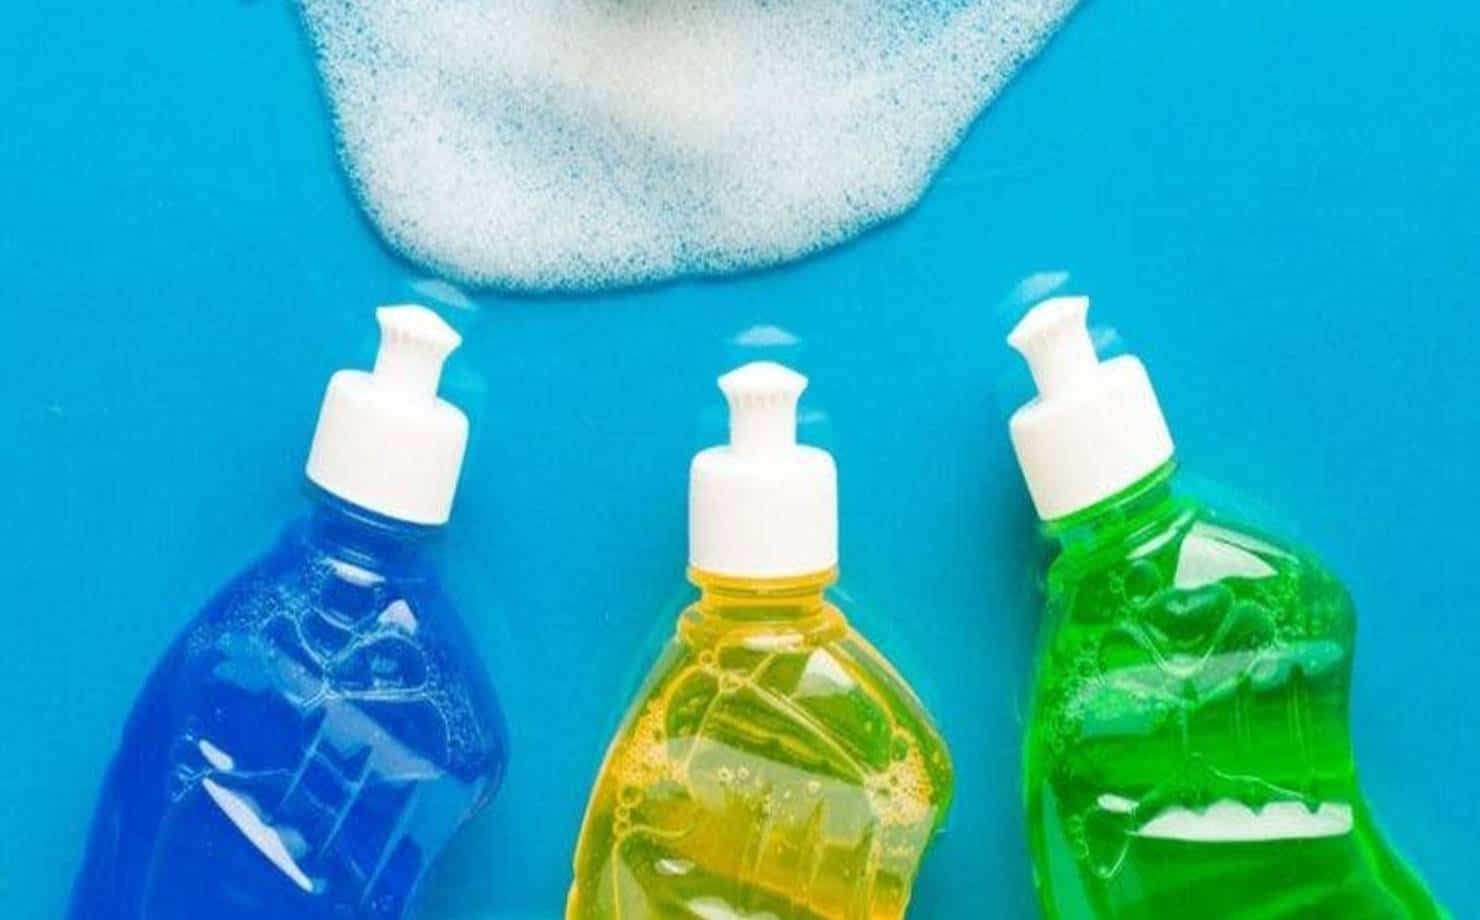 Descubra 8 maneiras diferentes de usar o detergente e se surpreenda